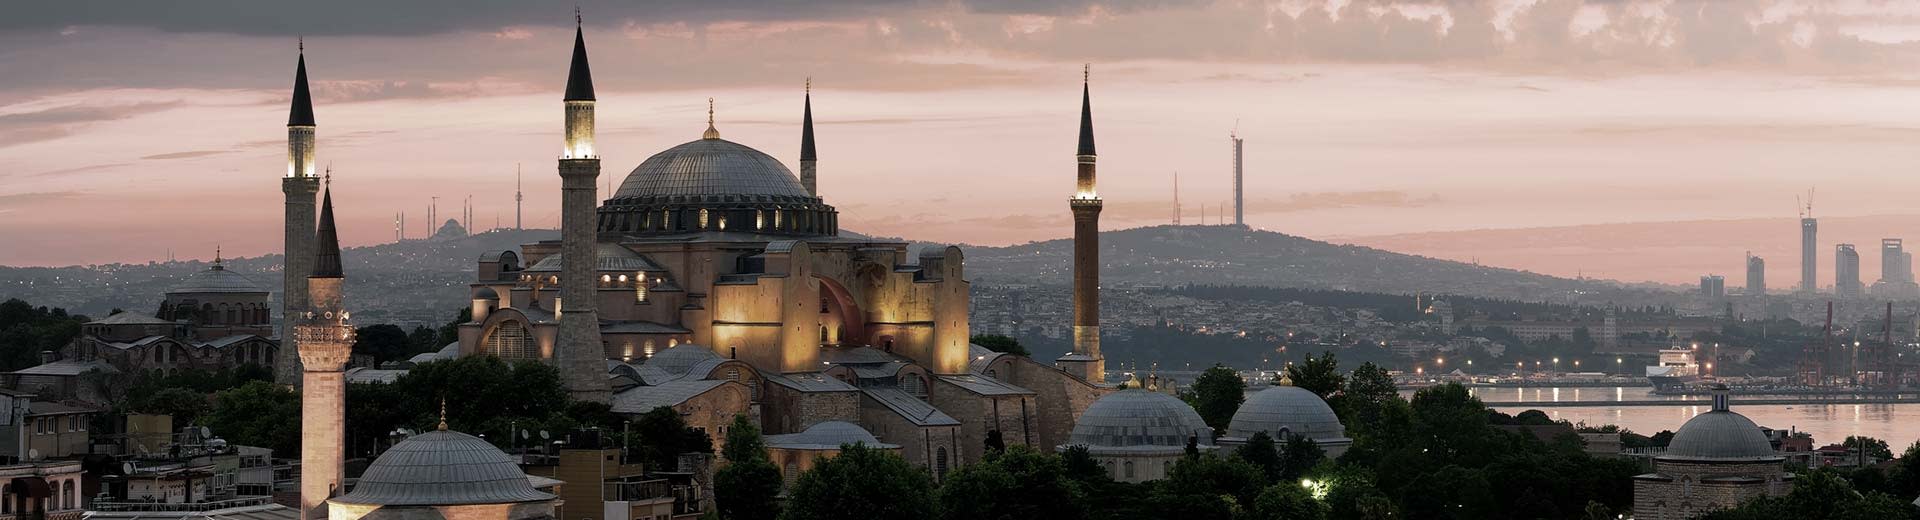 Une mosquée silhouett contre le soleil couchant à Istanbul.